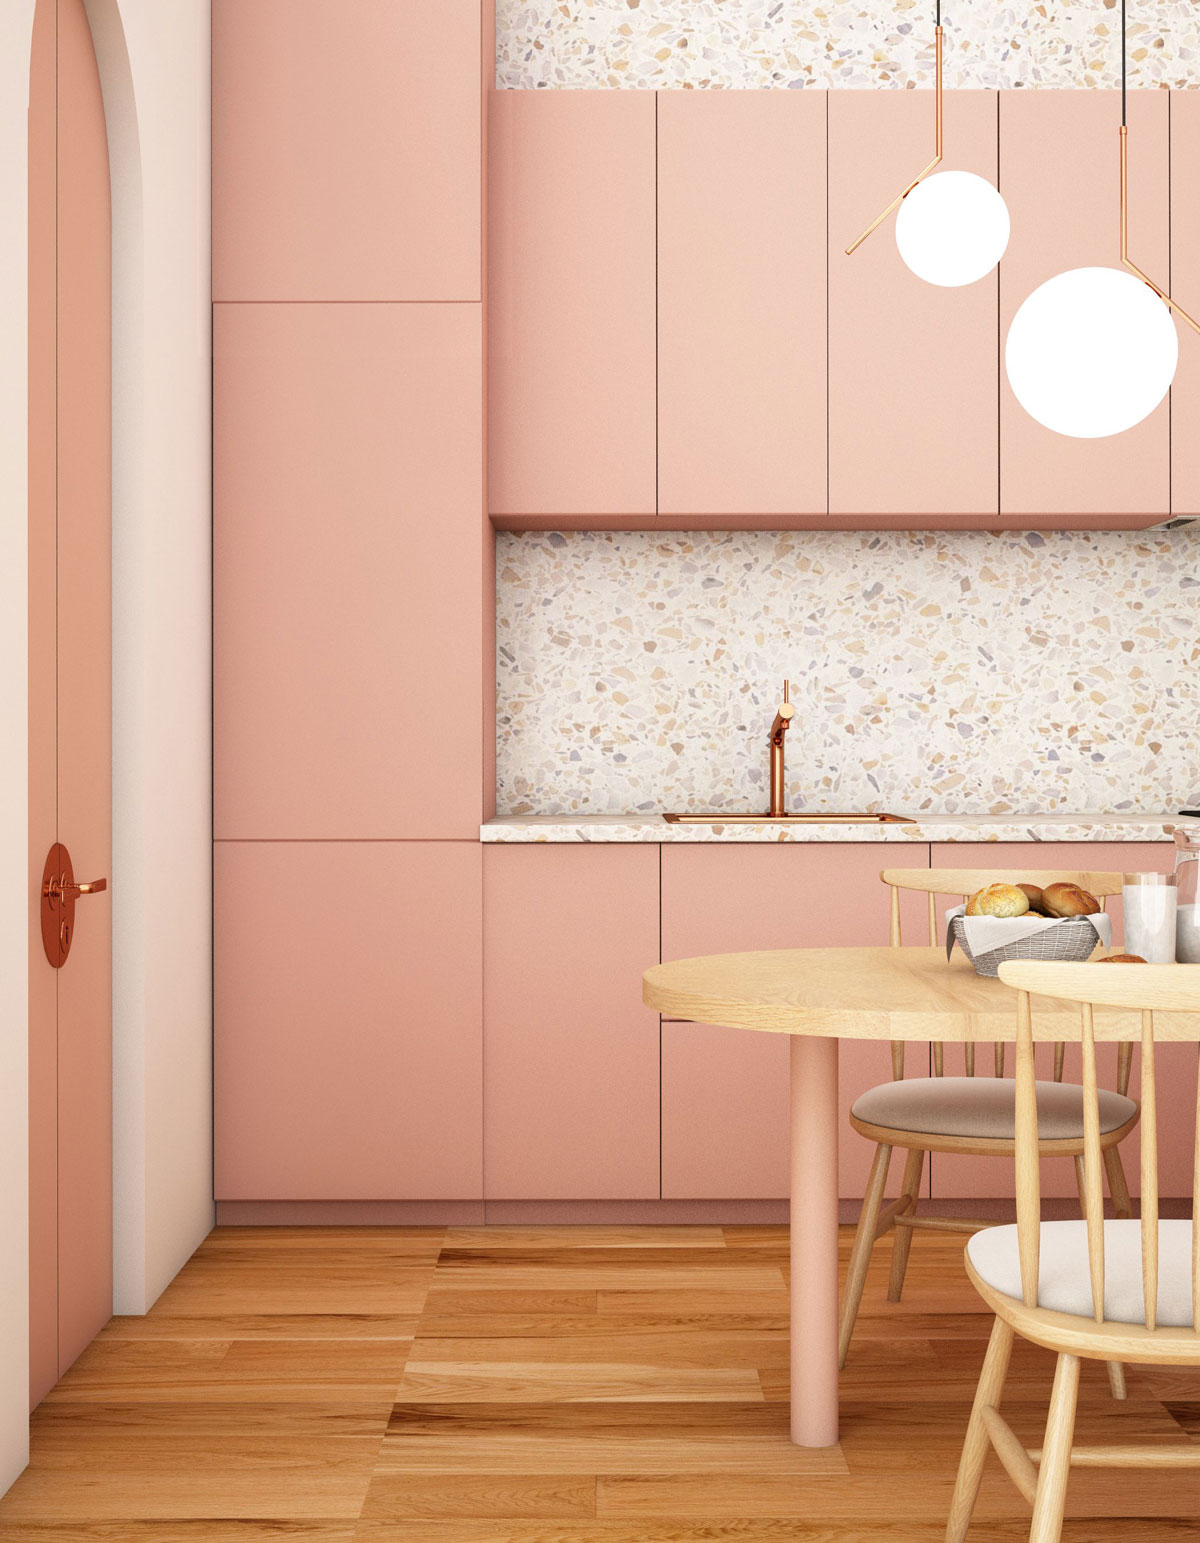 farebná kuchynská linka v minimalistickom dizajne, otváranie dvierok funguje na push systém, kuchyňa je v pastelovej lososovej farbe, zástena je vo vzore terazza